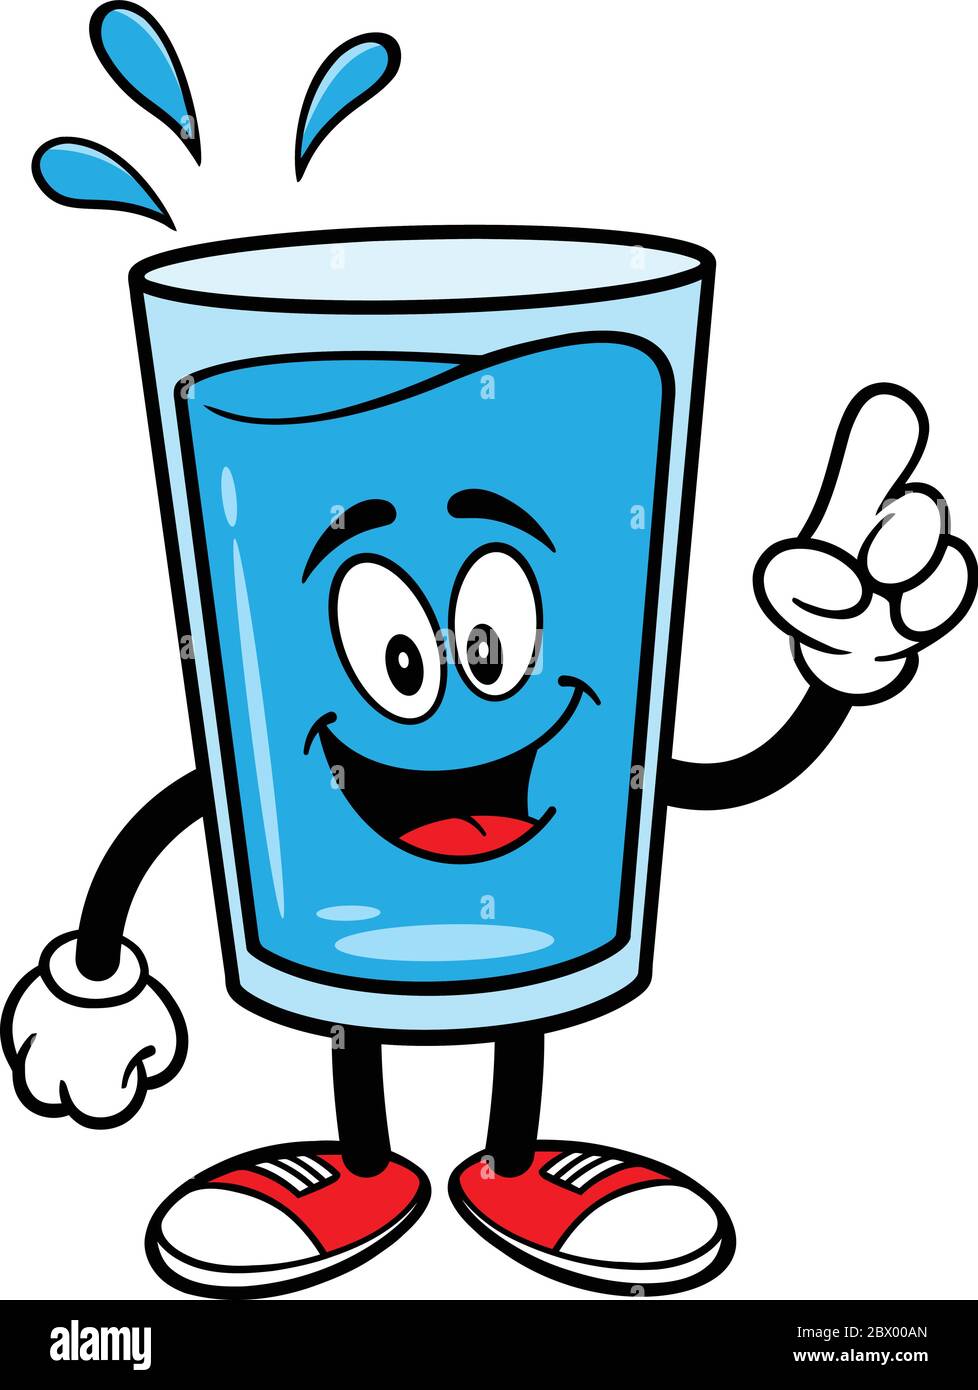 Vaso de agua mascota hablando - una ilustración de dibujos animados de un  vaso de agua mascota hablando Imagen Vector de stock - Alamy